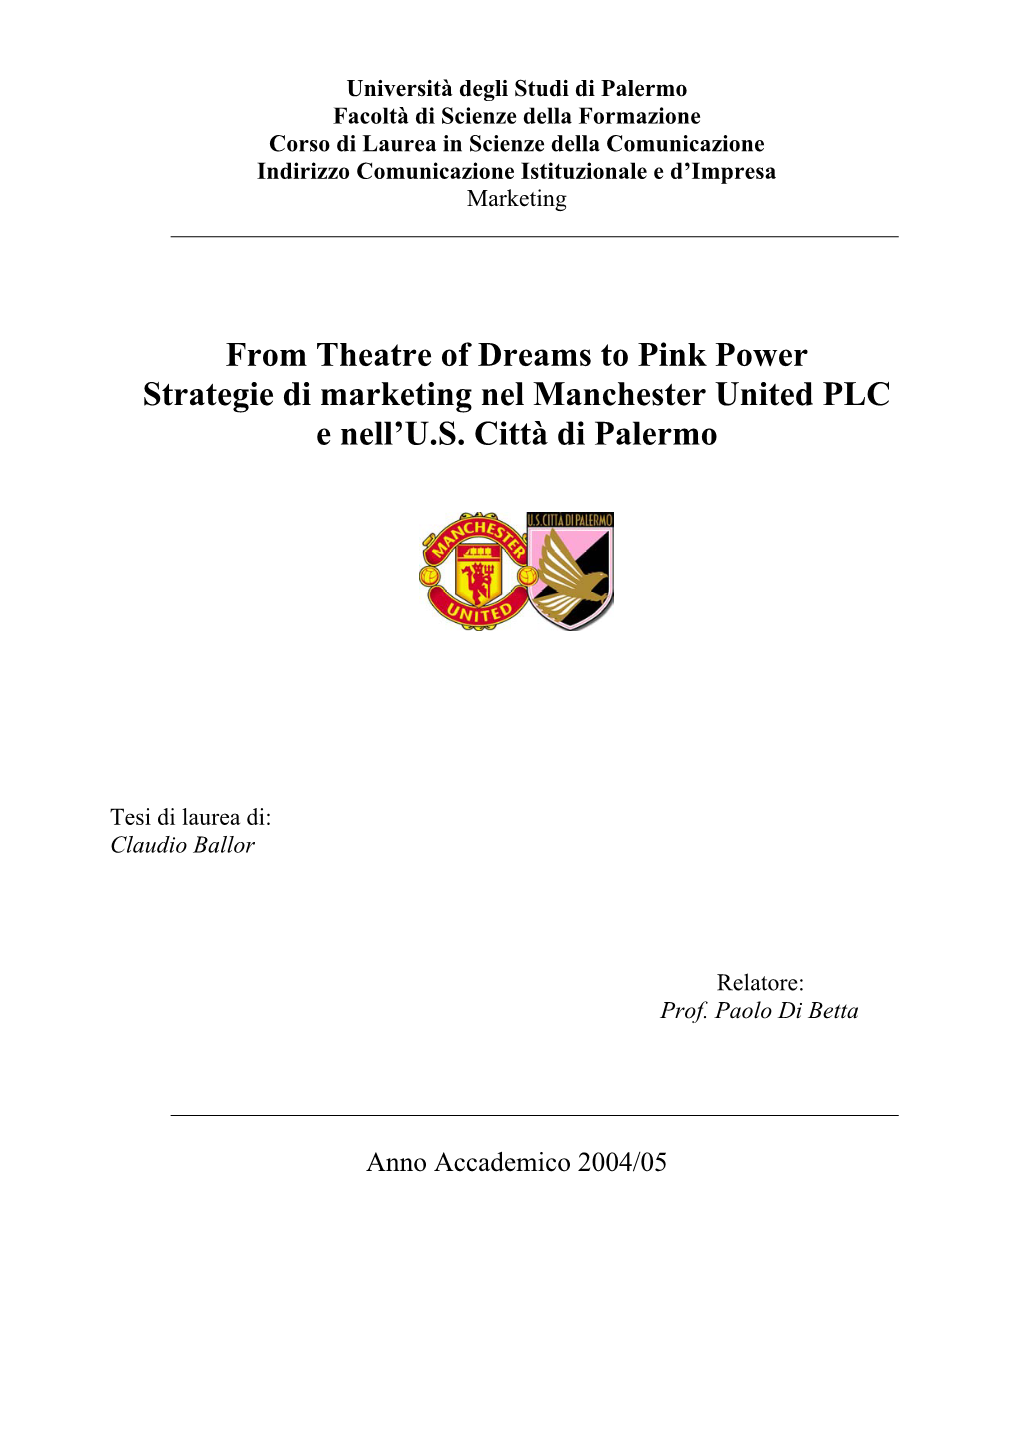 From Theatre of Dreams to Pink Power Strategie Di Marketing Nel Manchester United PLC E Nell'u.S. Città Di Palermo